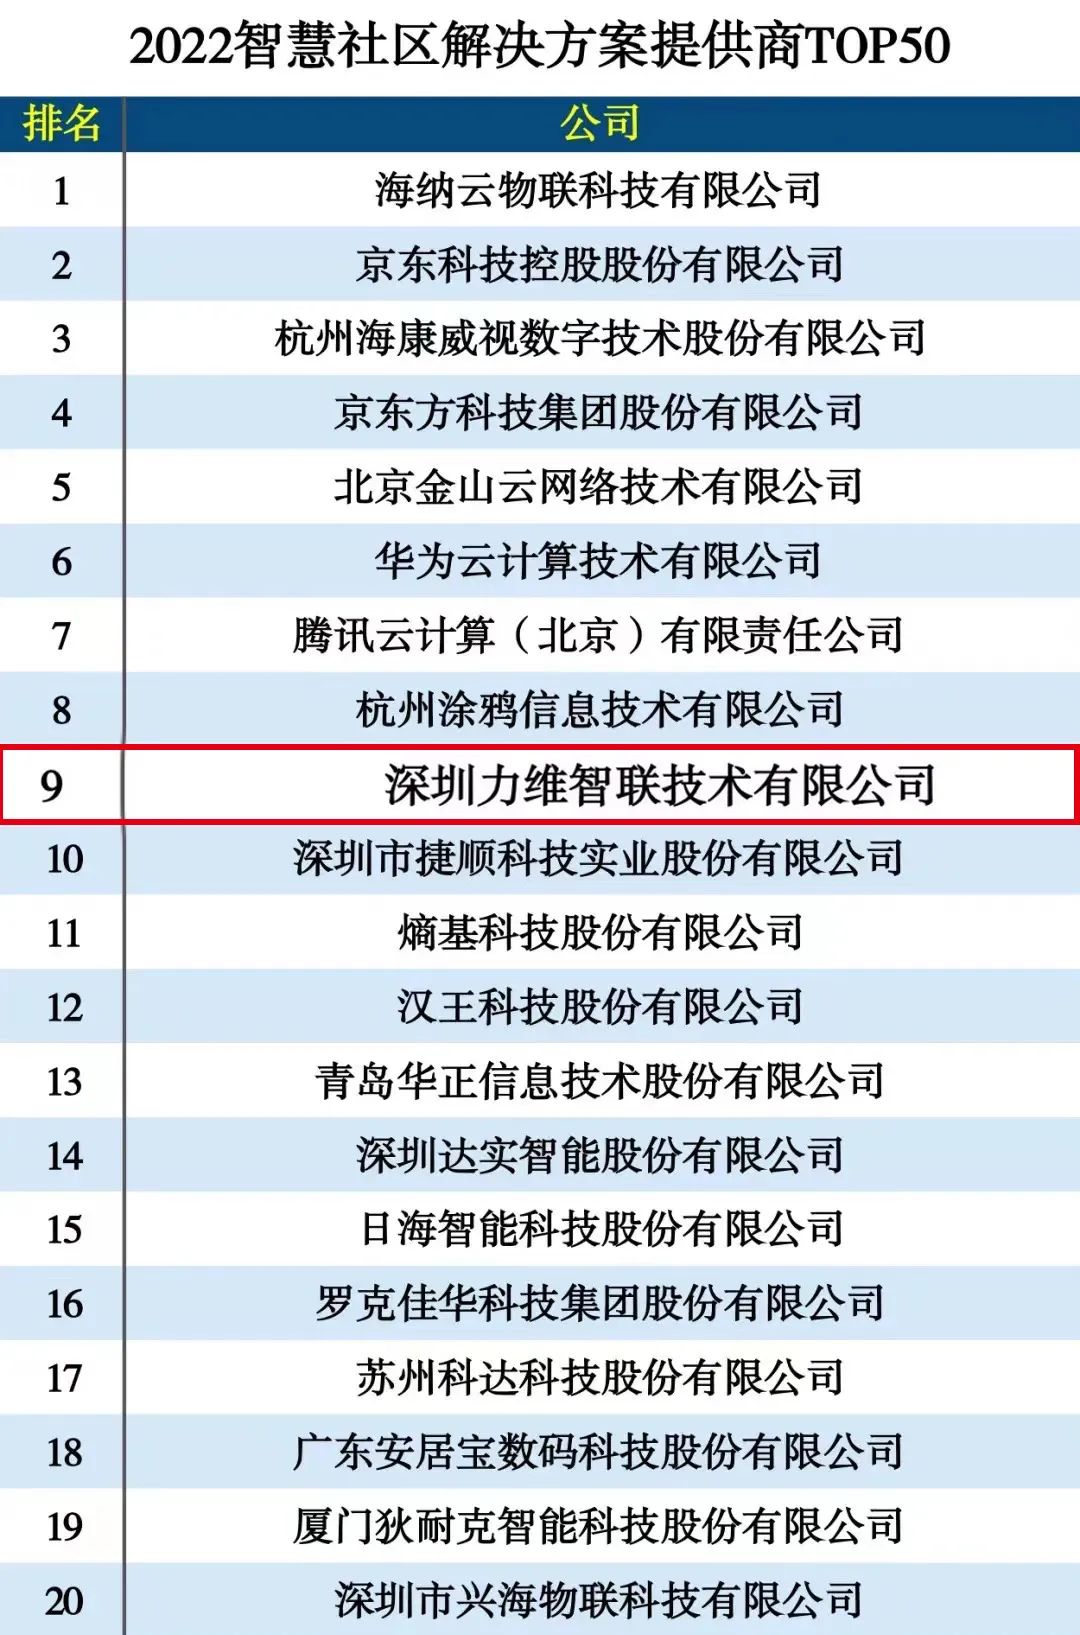 9170官方金沙入口会员登录上榜“2022智慧社区解决方案提供商TOP50”